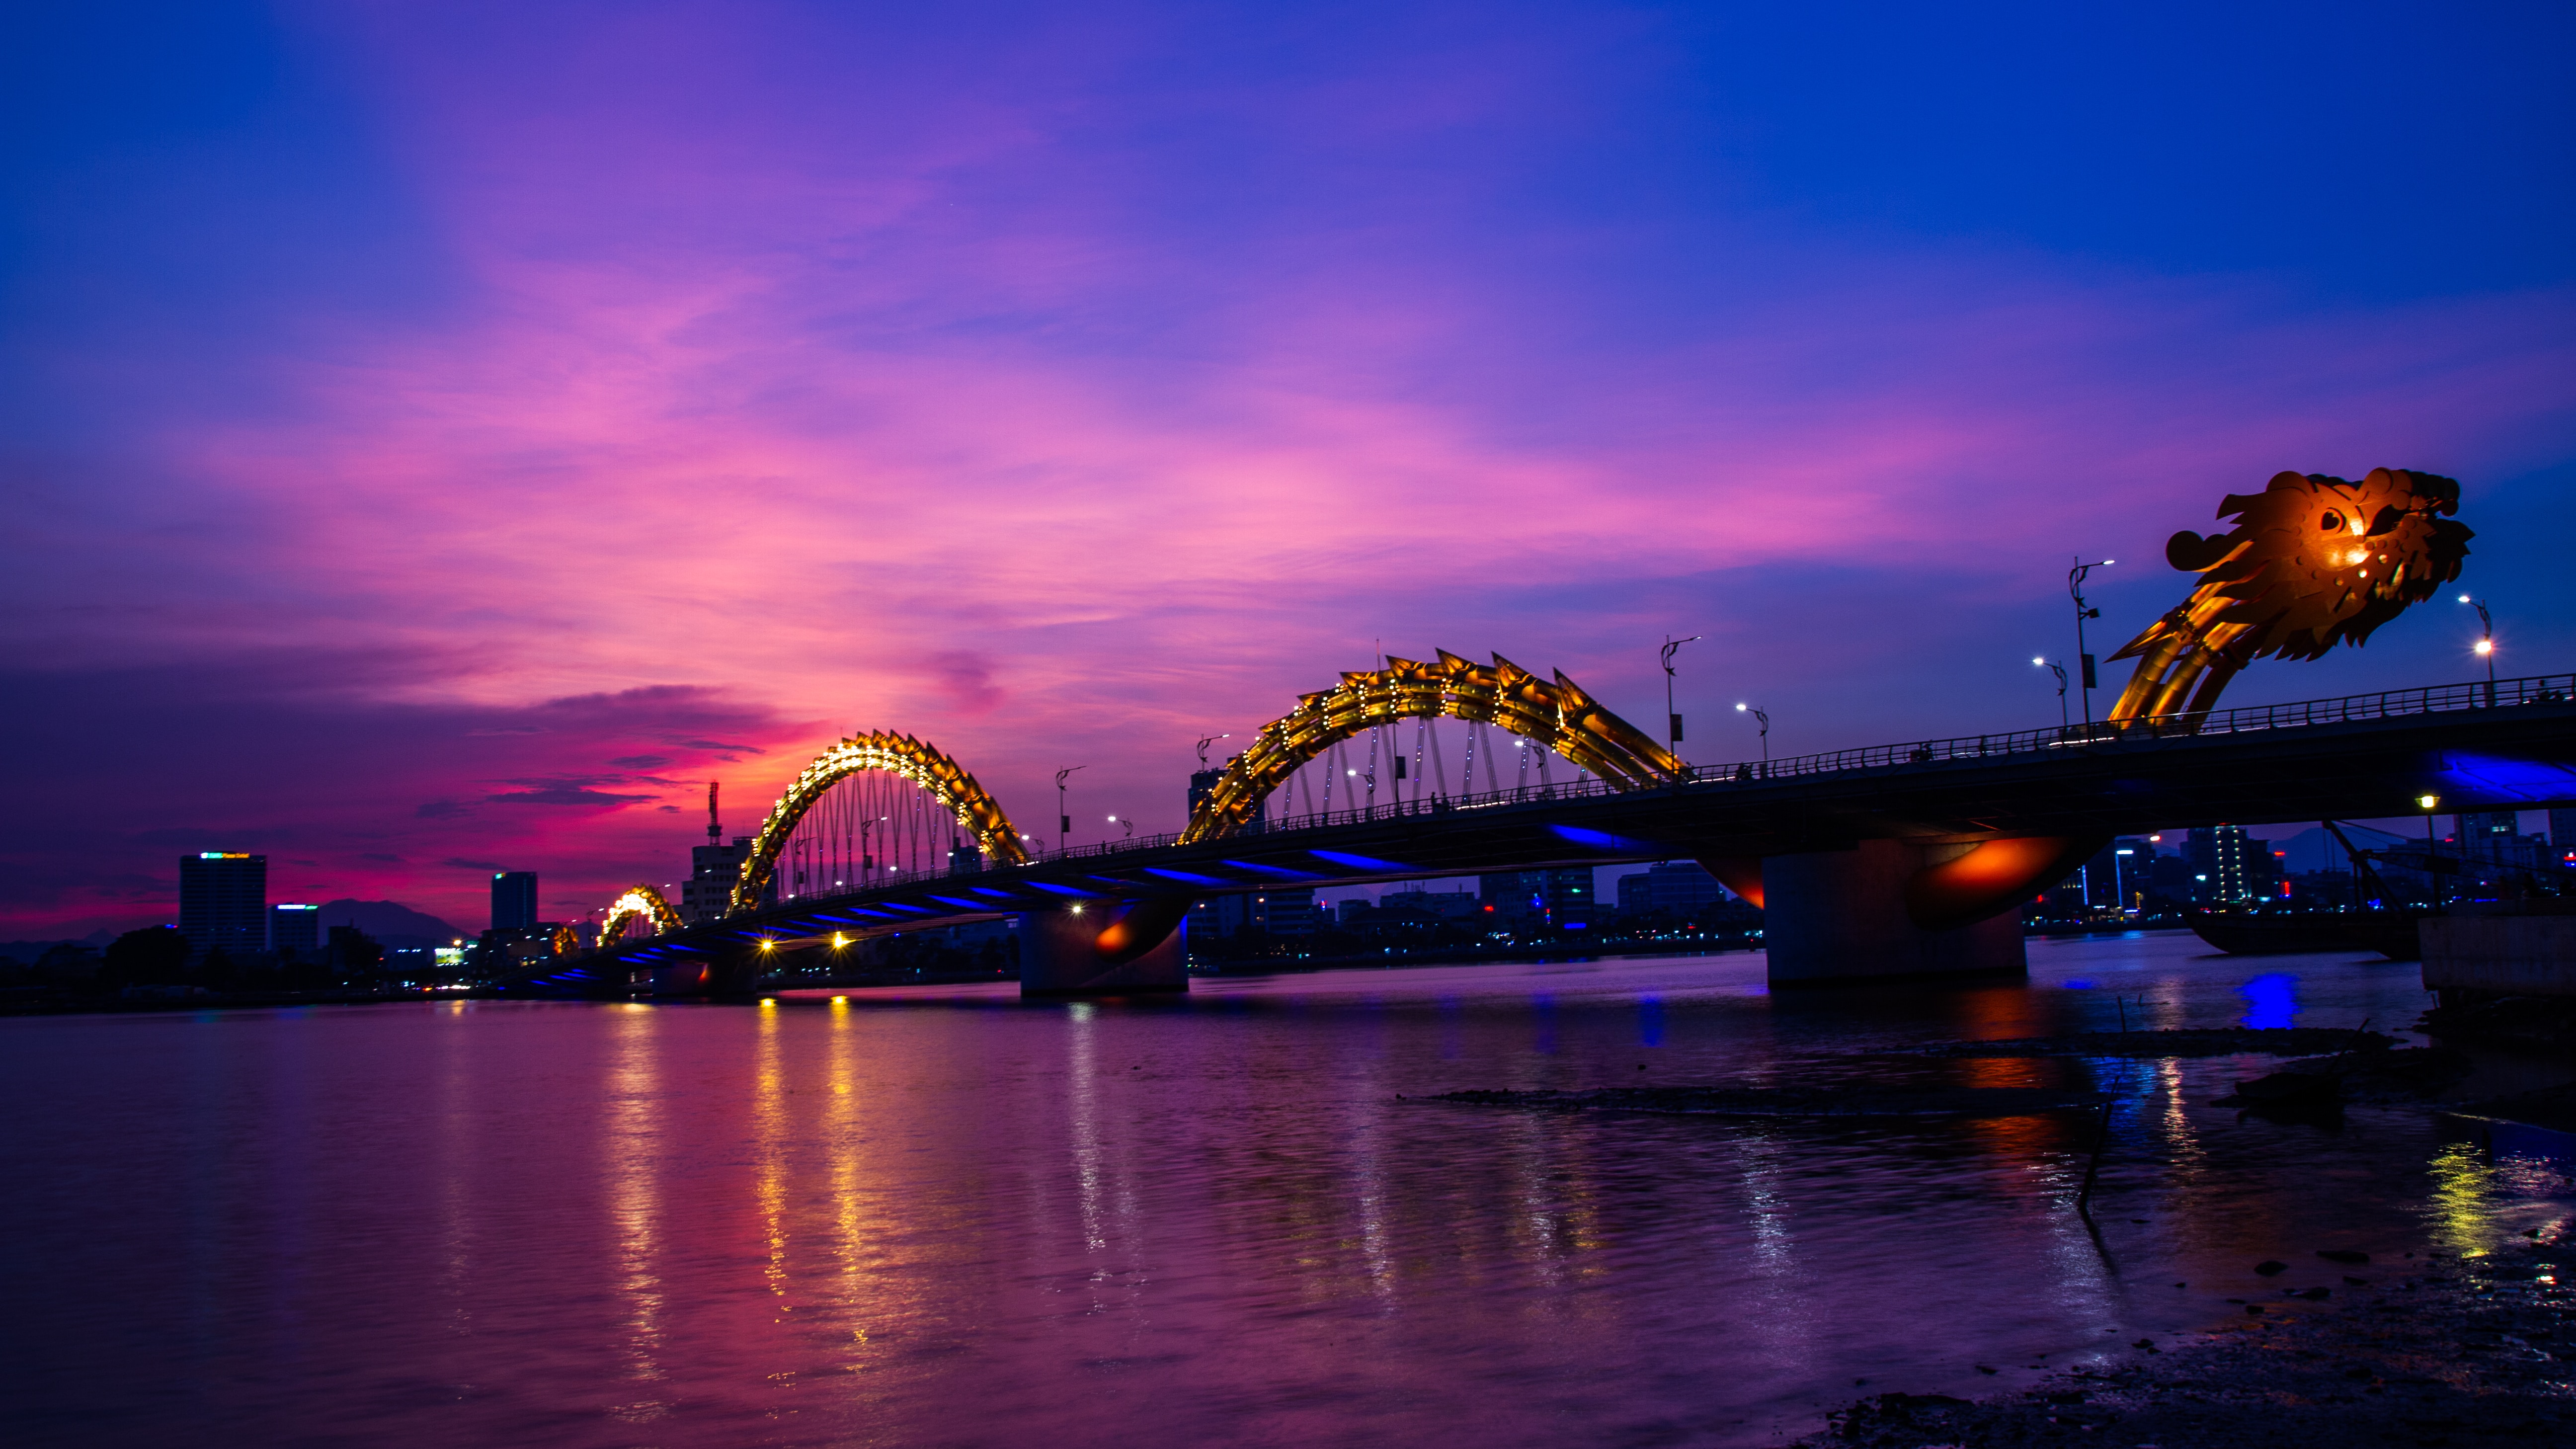 Du lịch hè 2020 - Cầu Rồng Đà Nẵng lên đèn. Ảnh: Photo by NGO TUNG on Unsplash